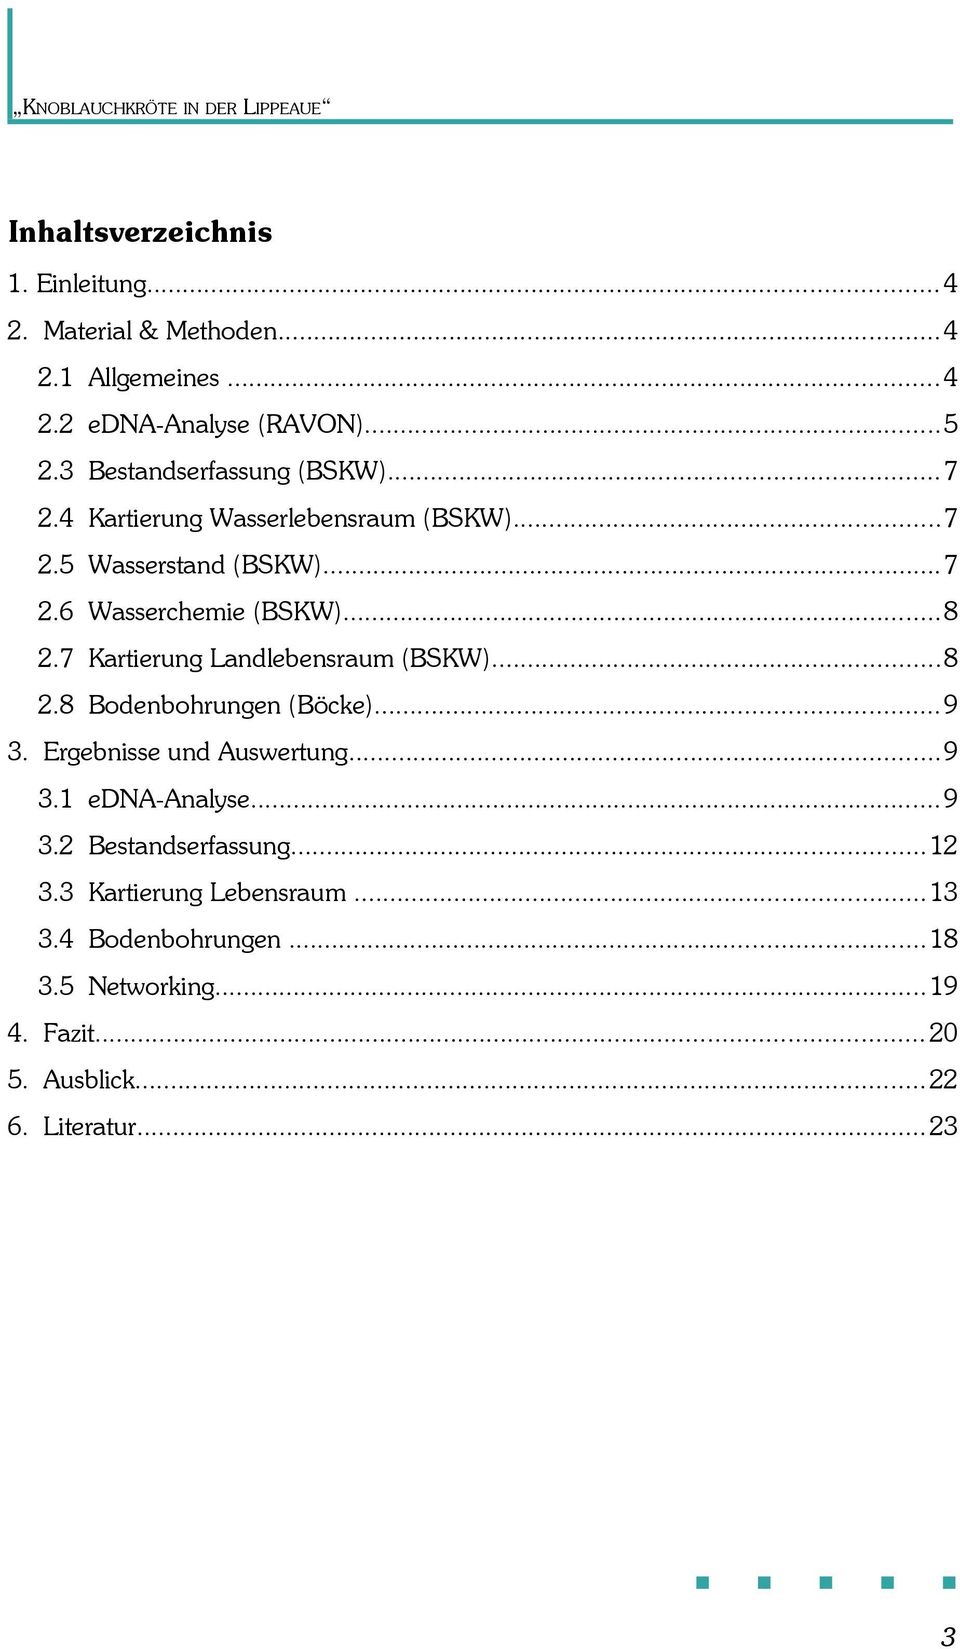 7 Kartierung Landlebensraum (BSKW)...8 2.8 Bodenbohrungen (Böcke)...9 3. Ergebnisse und Auswertung...9 3.1 edna-analyse...9 3.2 Bestandserfassung.